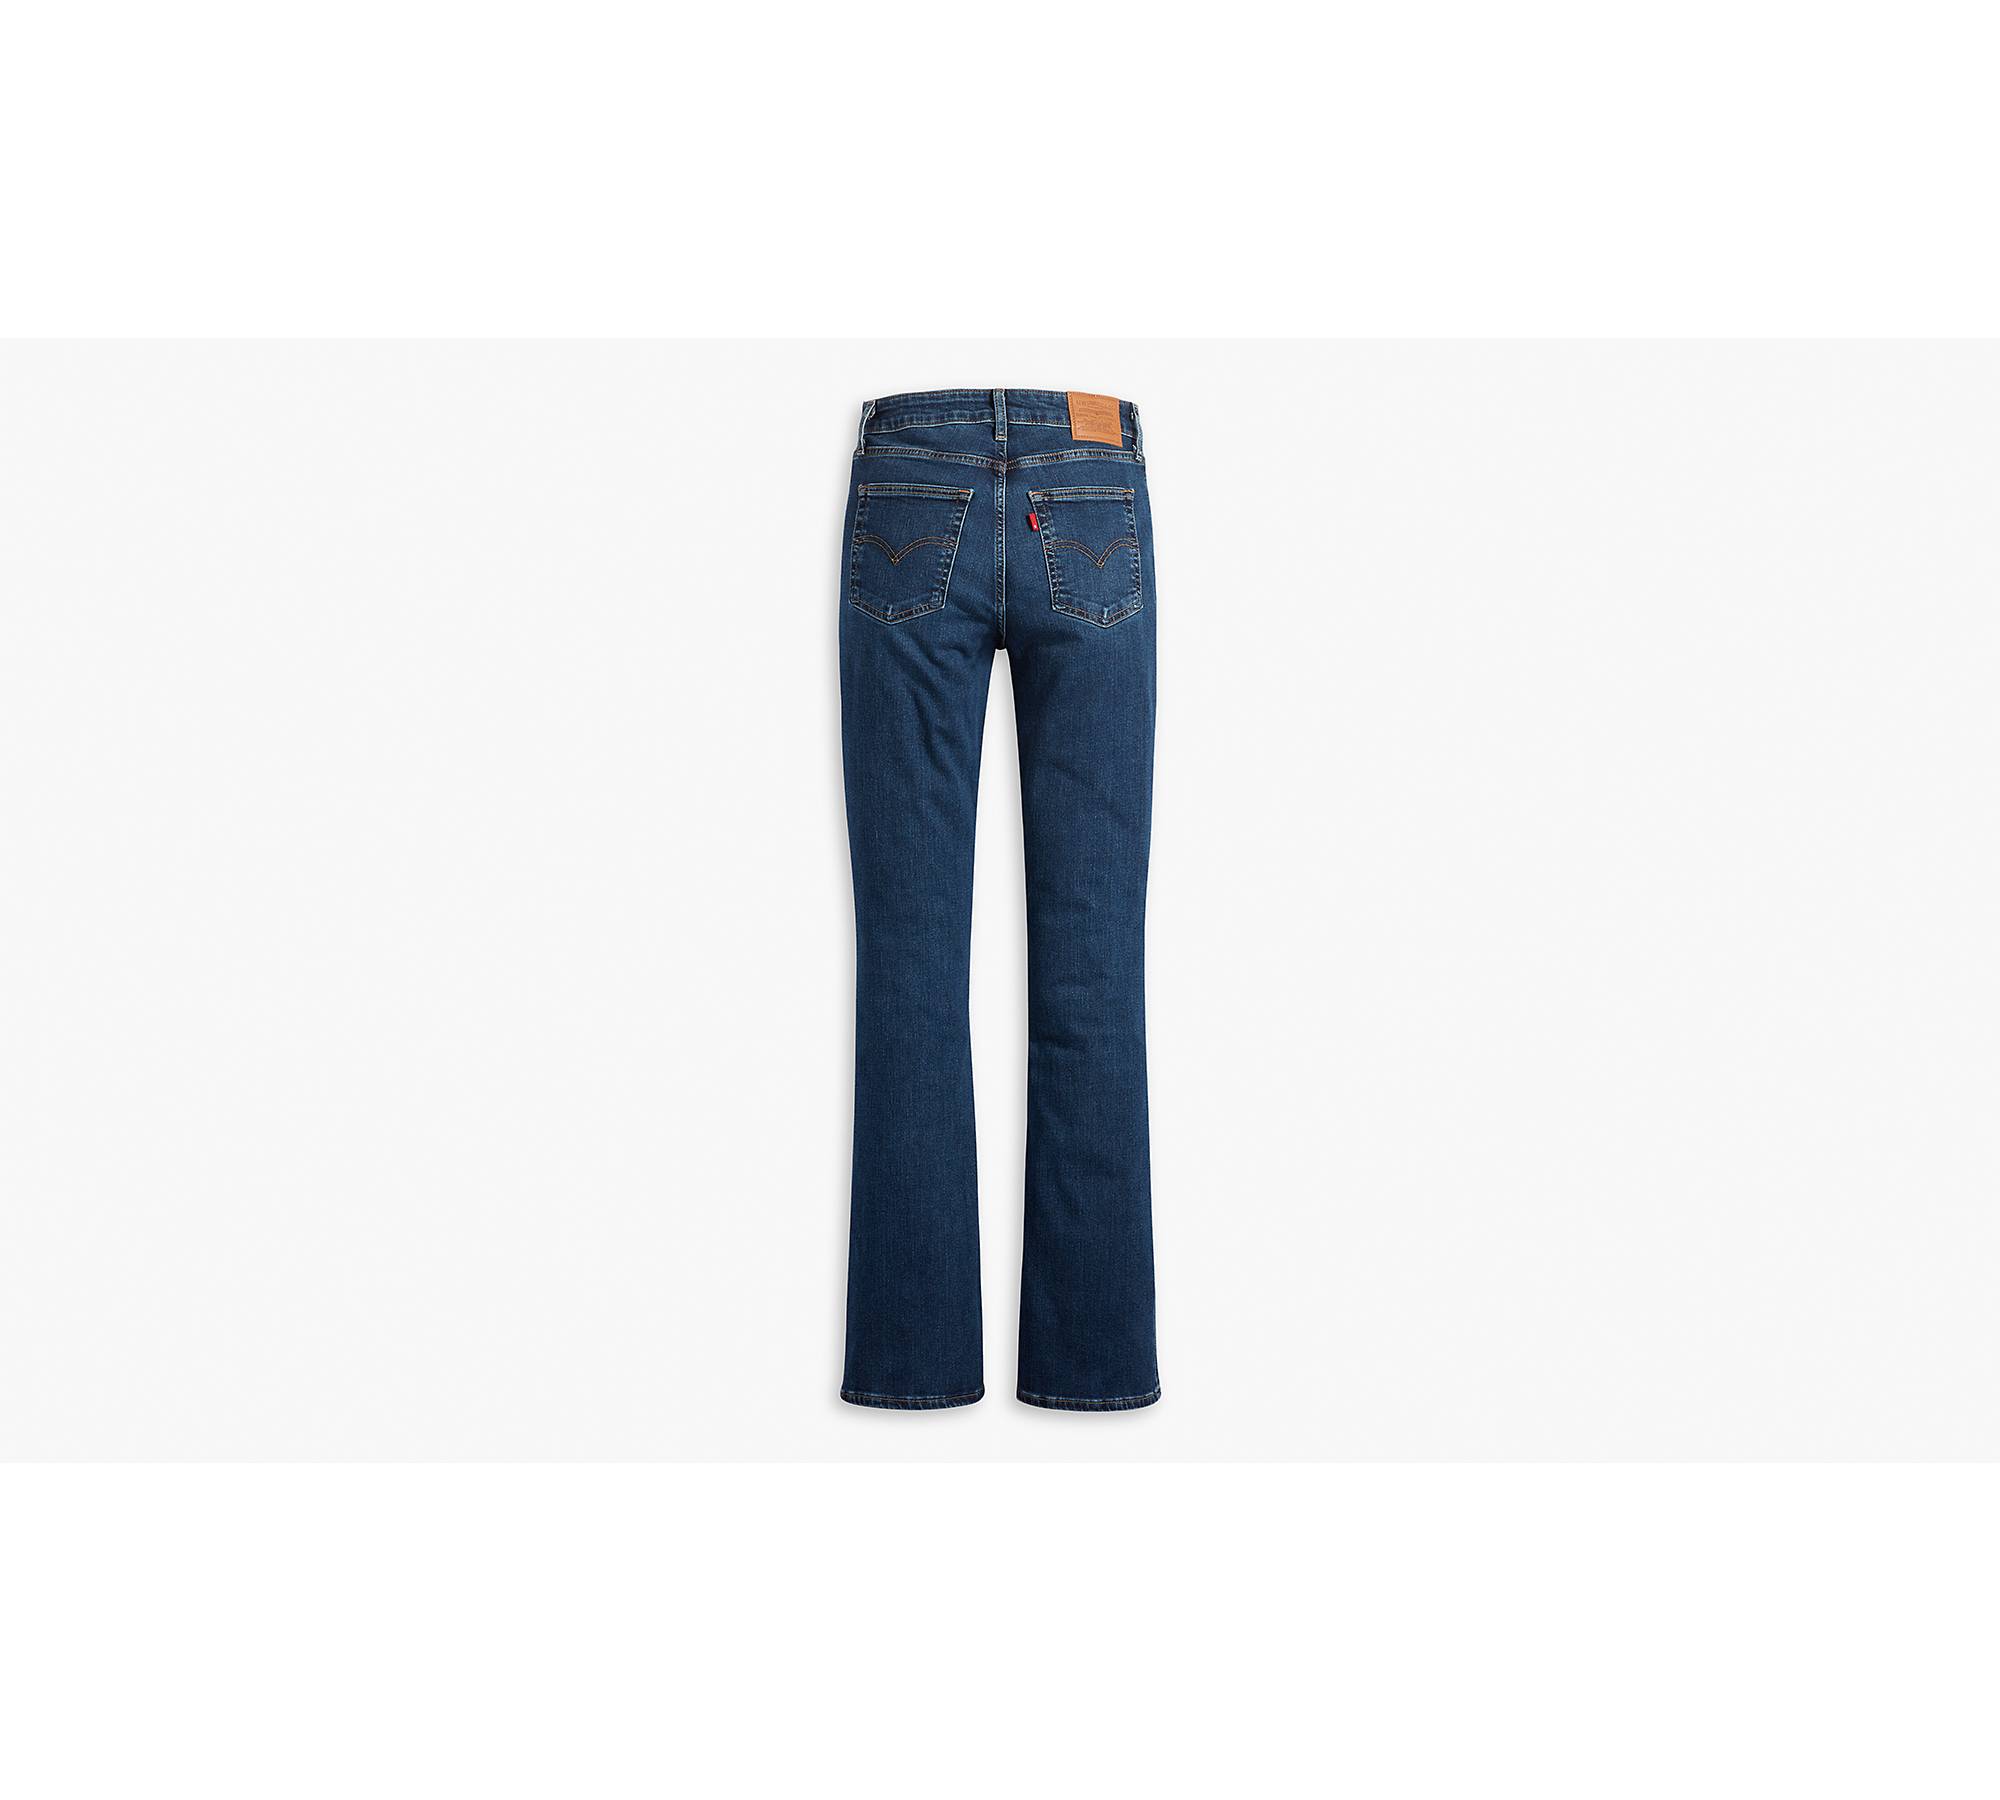 715 Bootcut Women's Jeans - Dark Wash